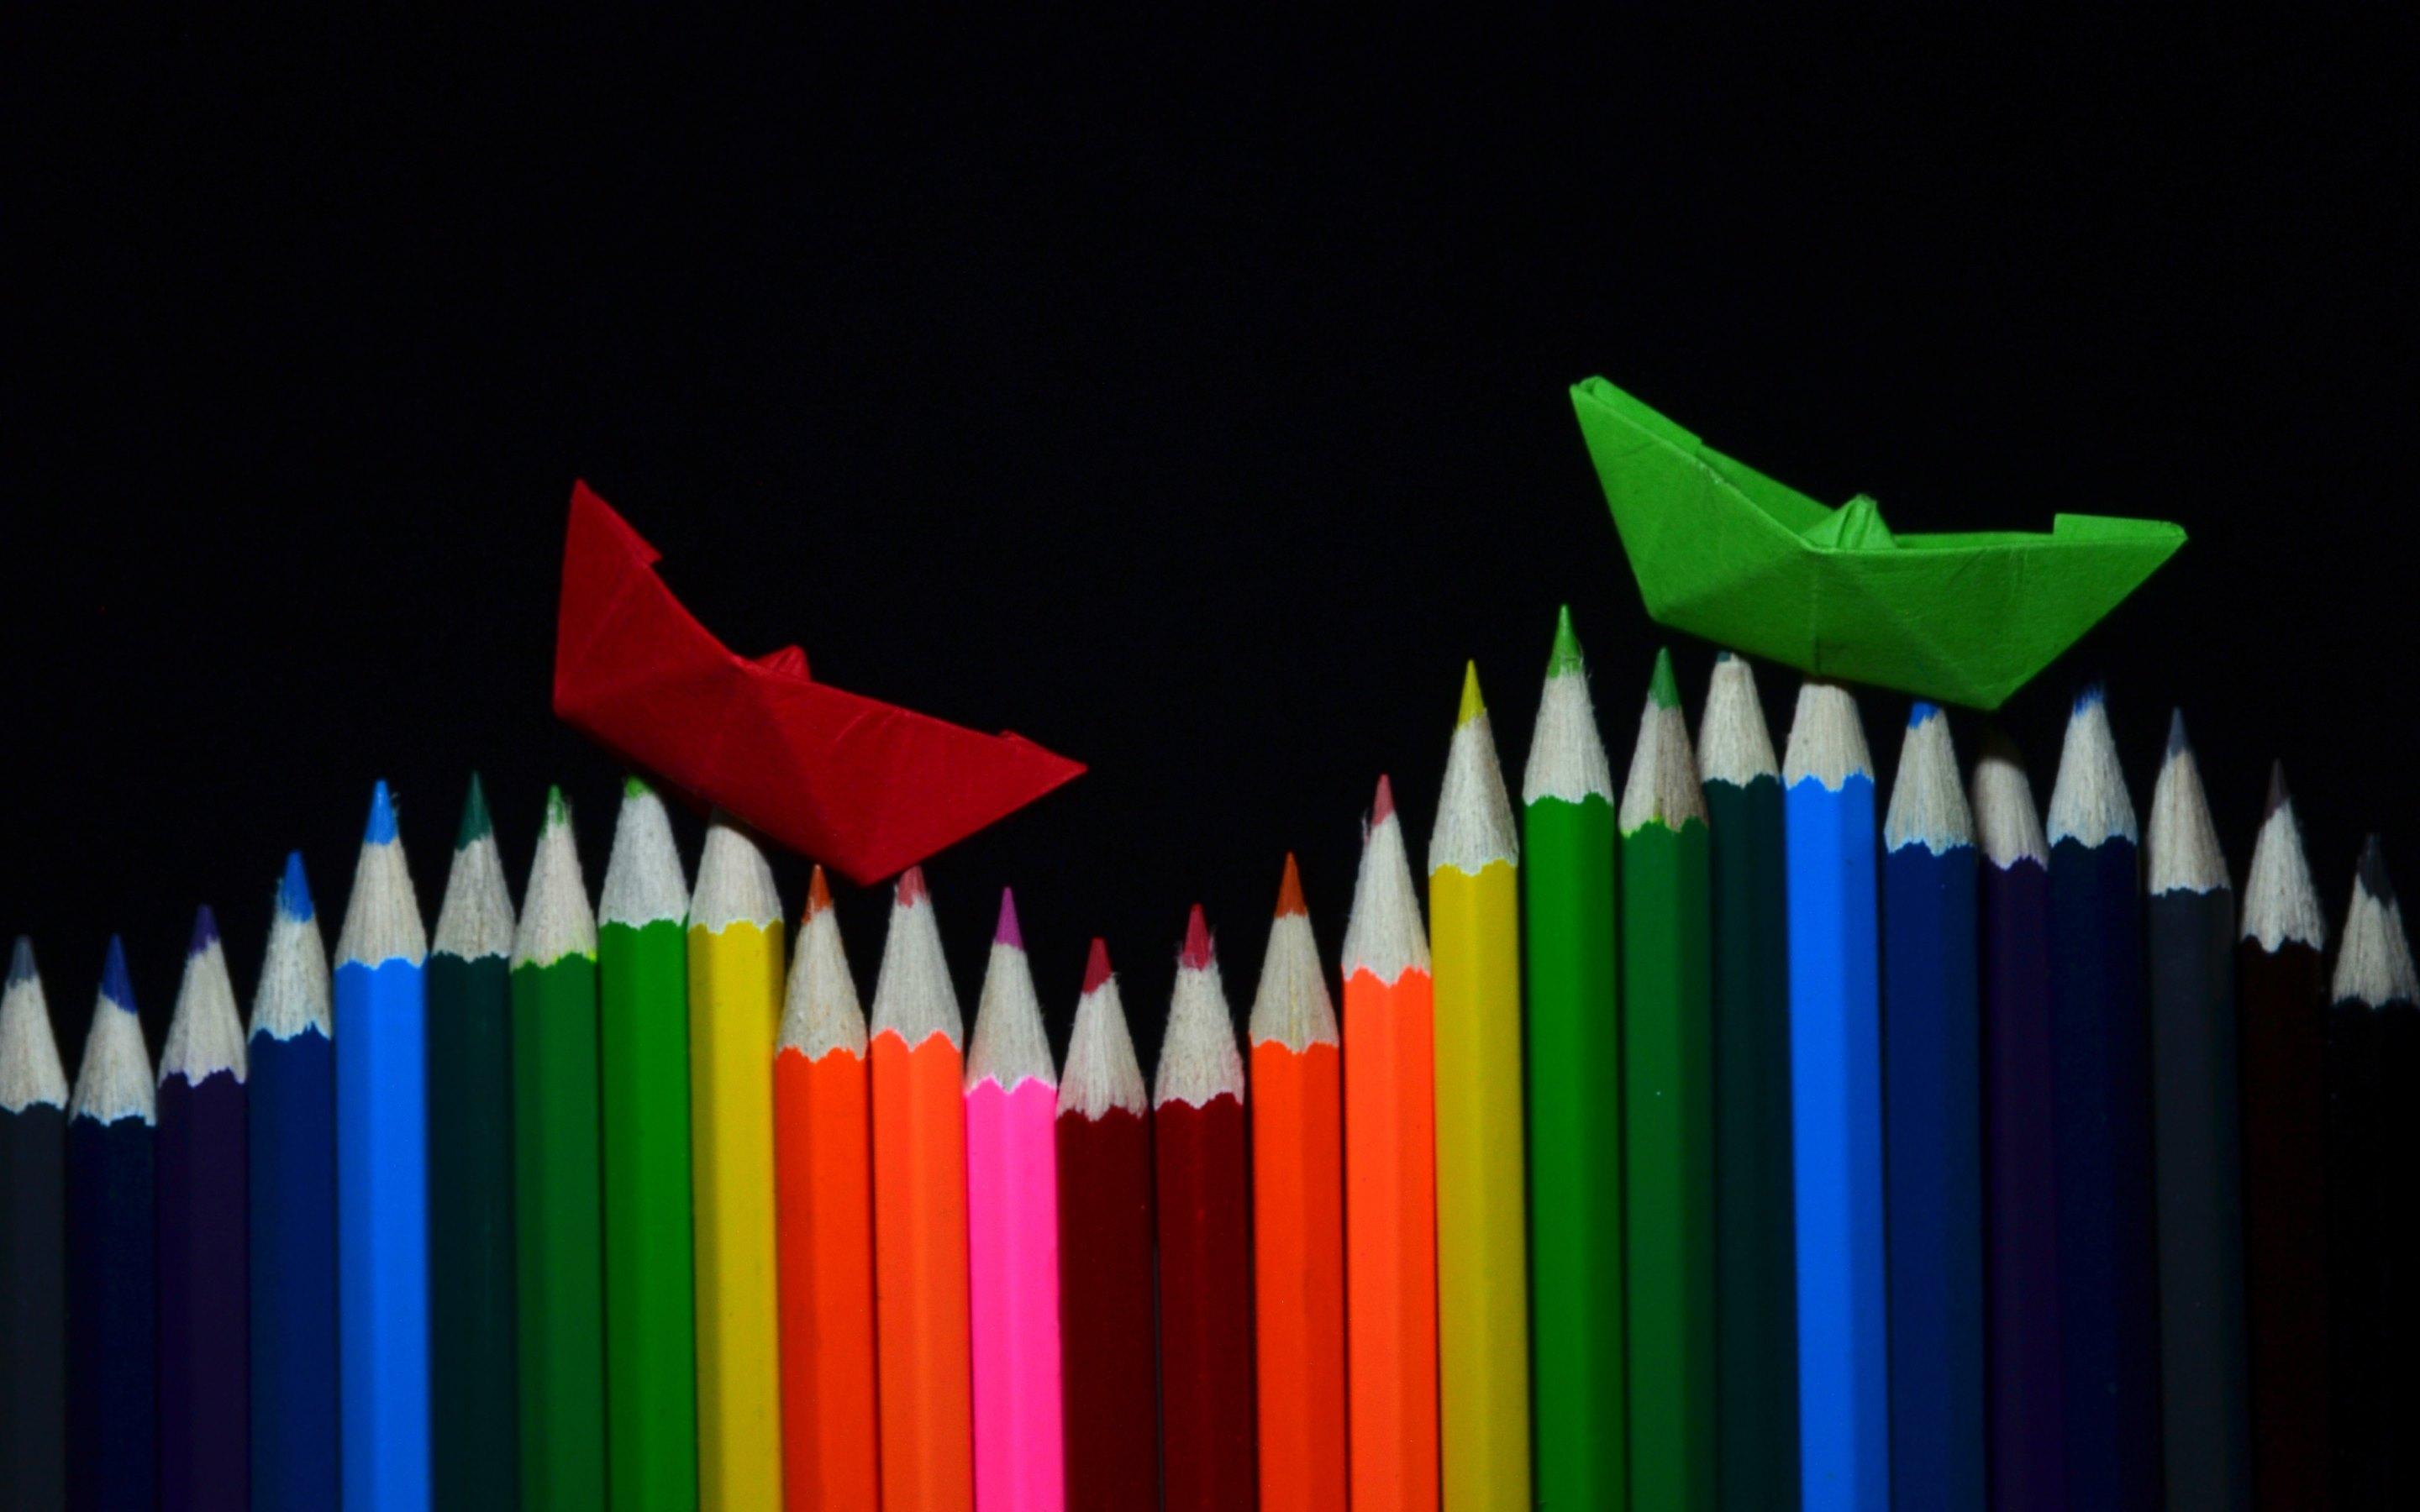  والپیپر فوق العاده زیبا از مداد رنگی با مارک عالی مخصوص نقاشی هایپر رئال